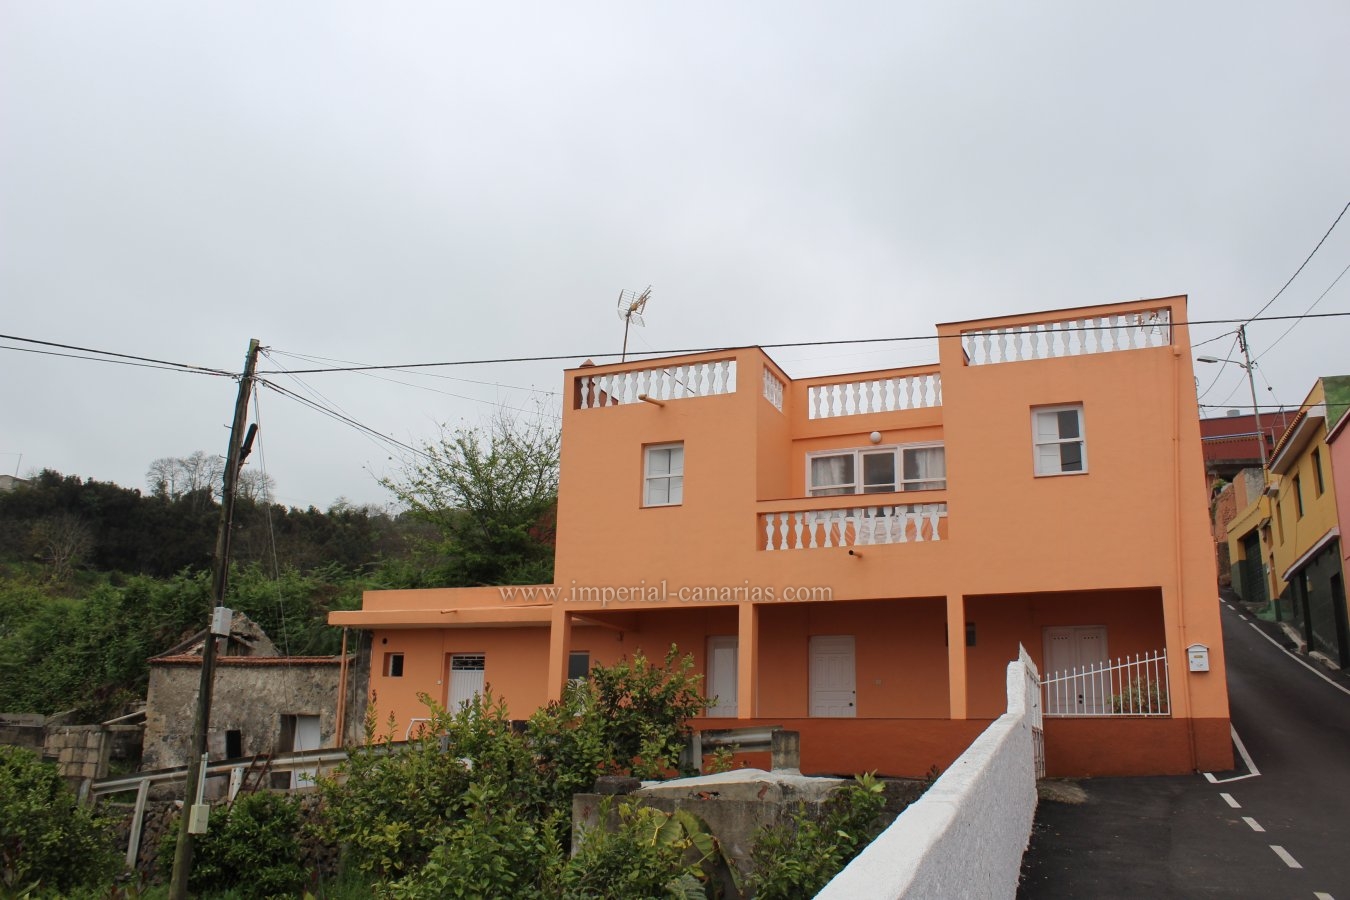  Casa terrera con su propia finca y bellas vistas en zona de Palo Blanco, Los Realejos. 